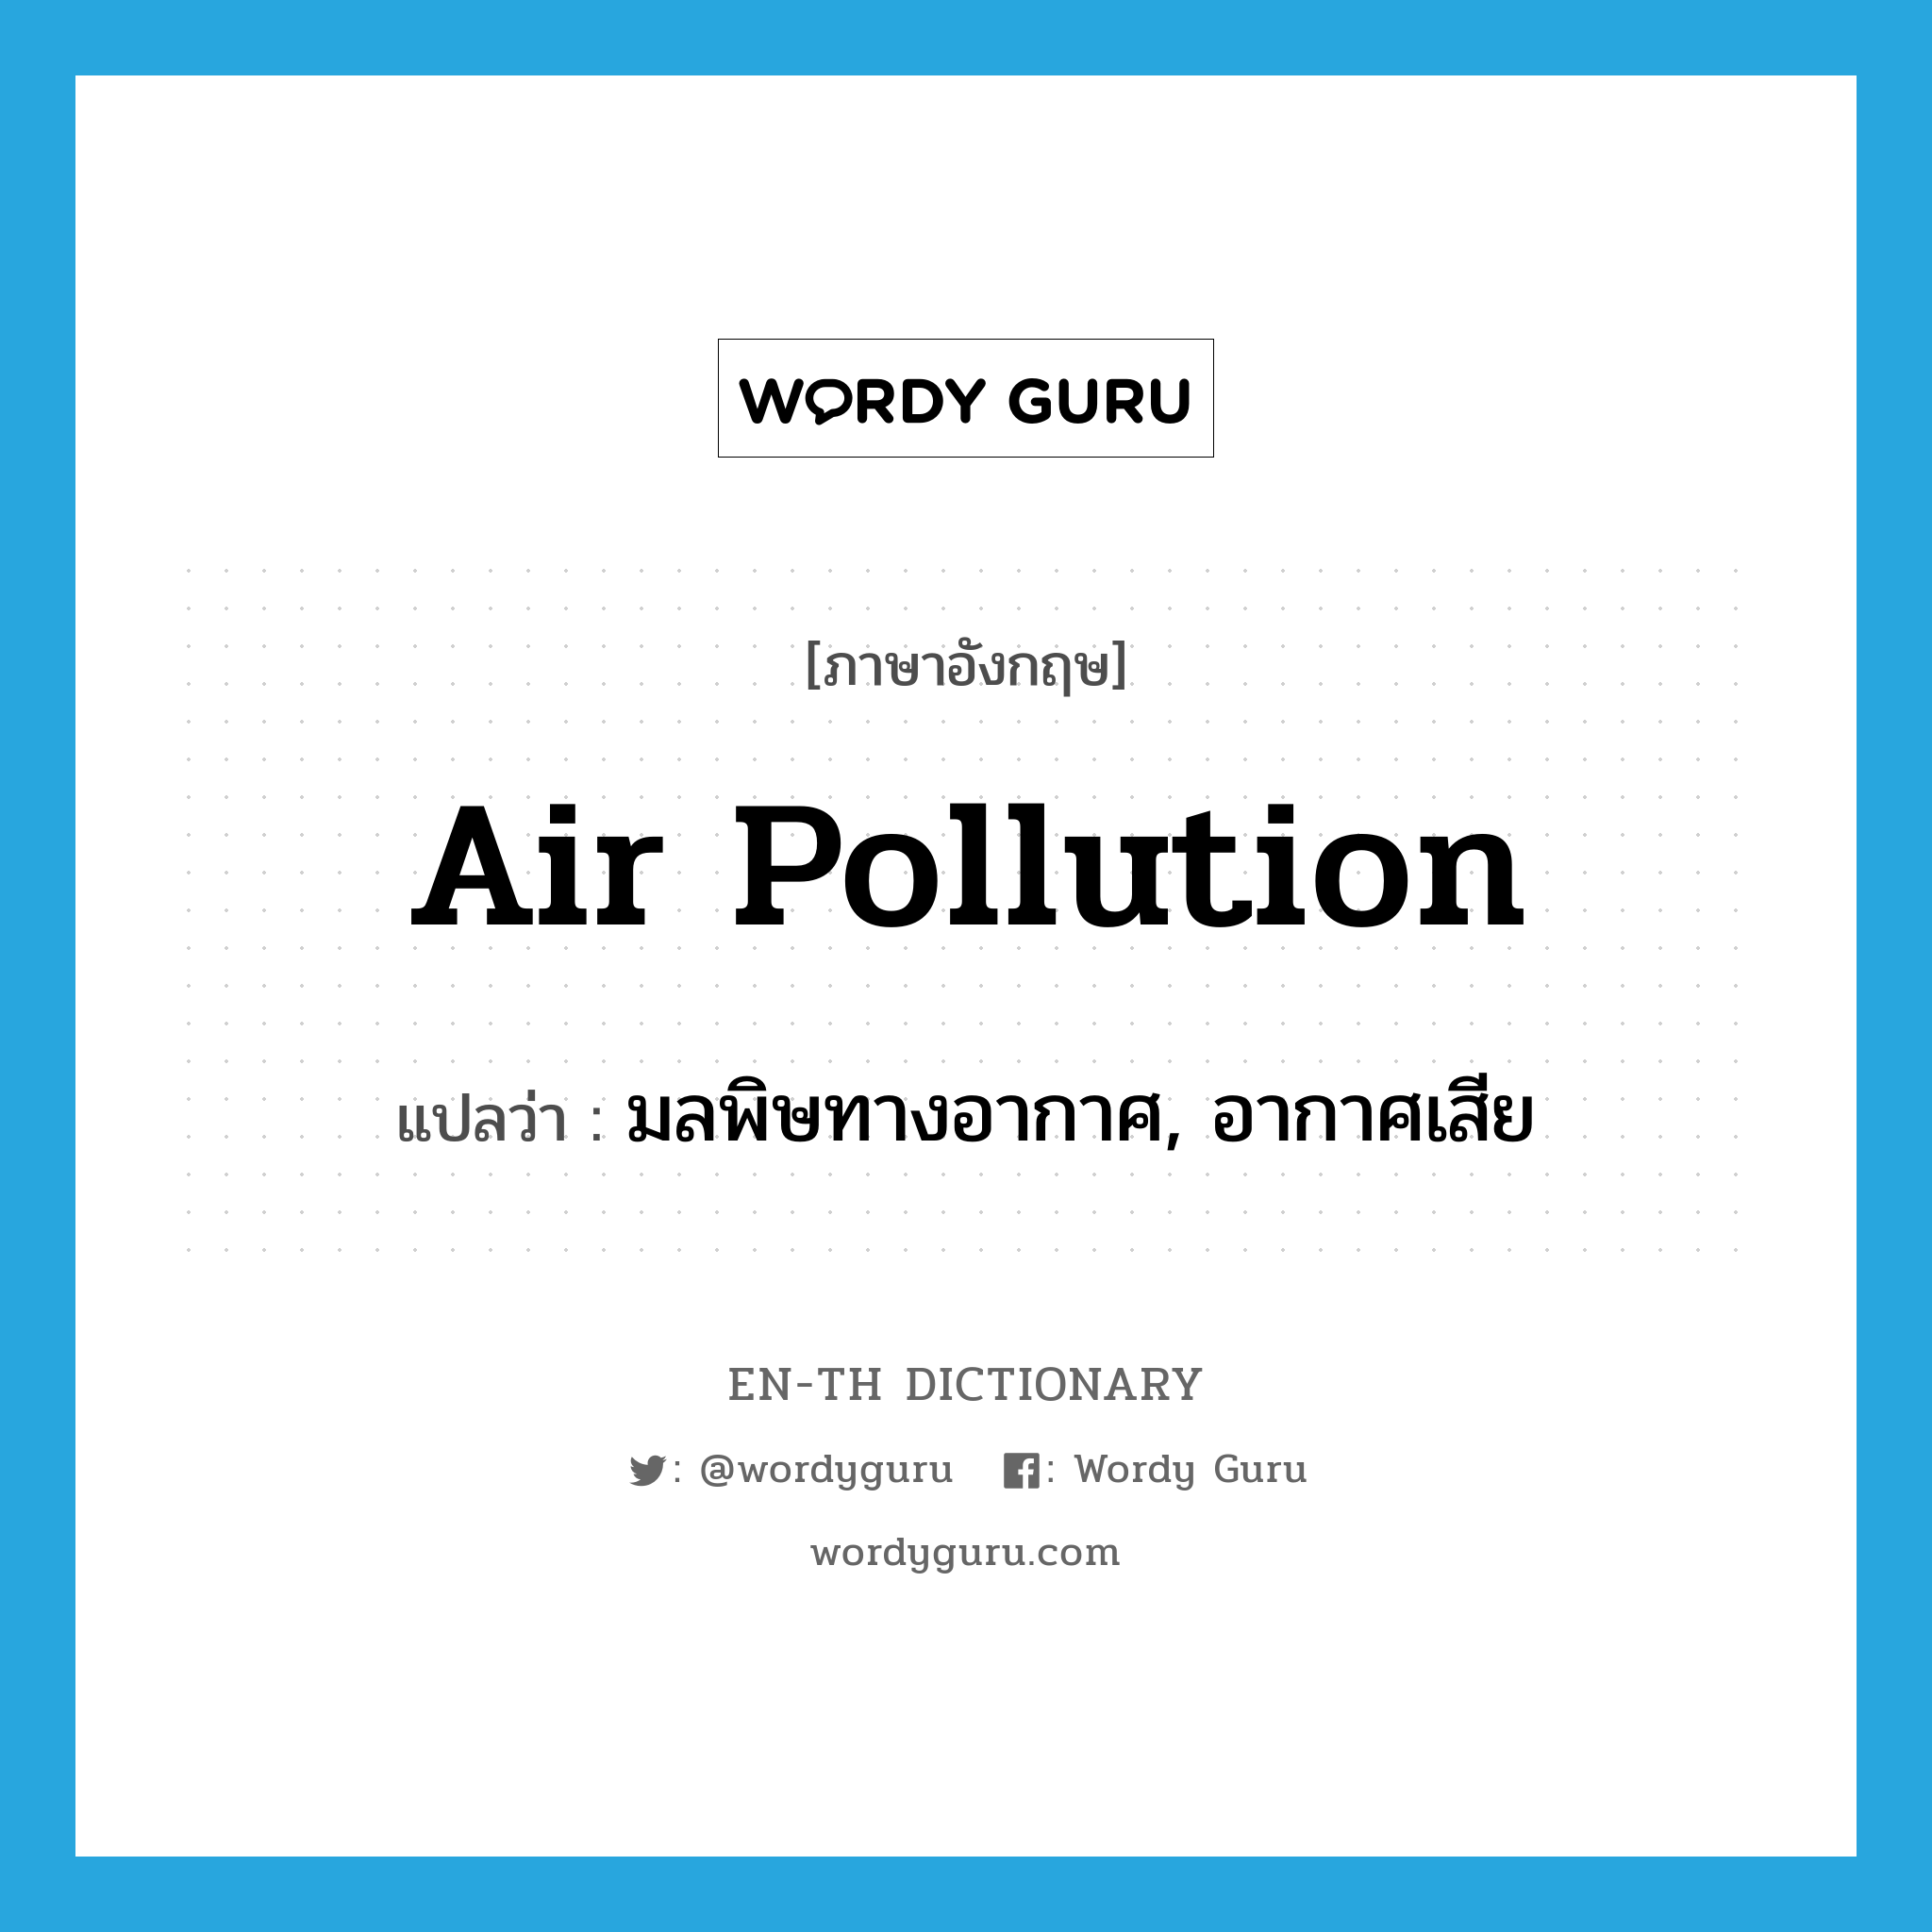 air pollution แปลว่า?, คำศัพท์ภาษาอังกฤษ air pollution แปลว่า มลพิษทางอากาศ, อากาศเสีย ประเภท N หมวด N